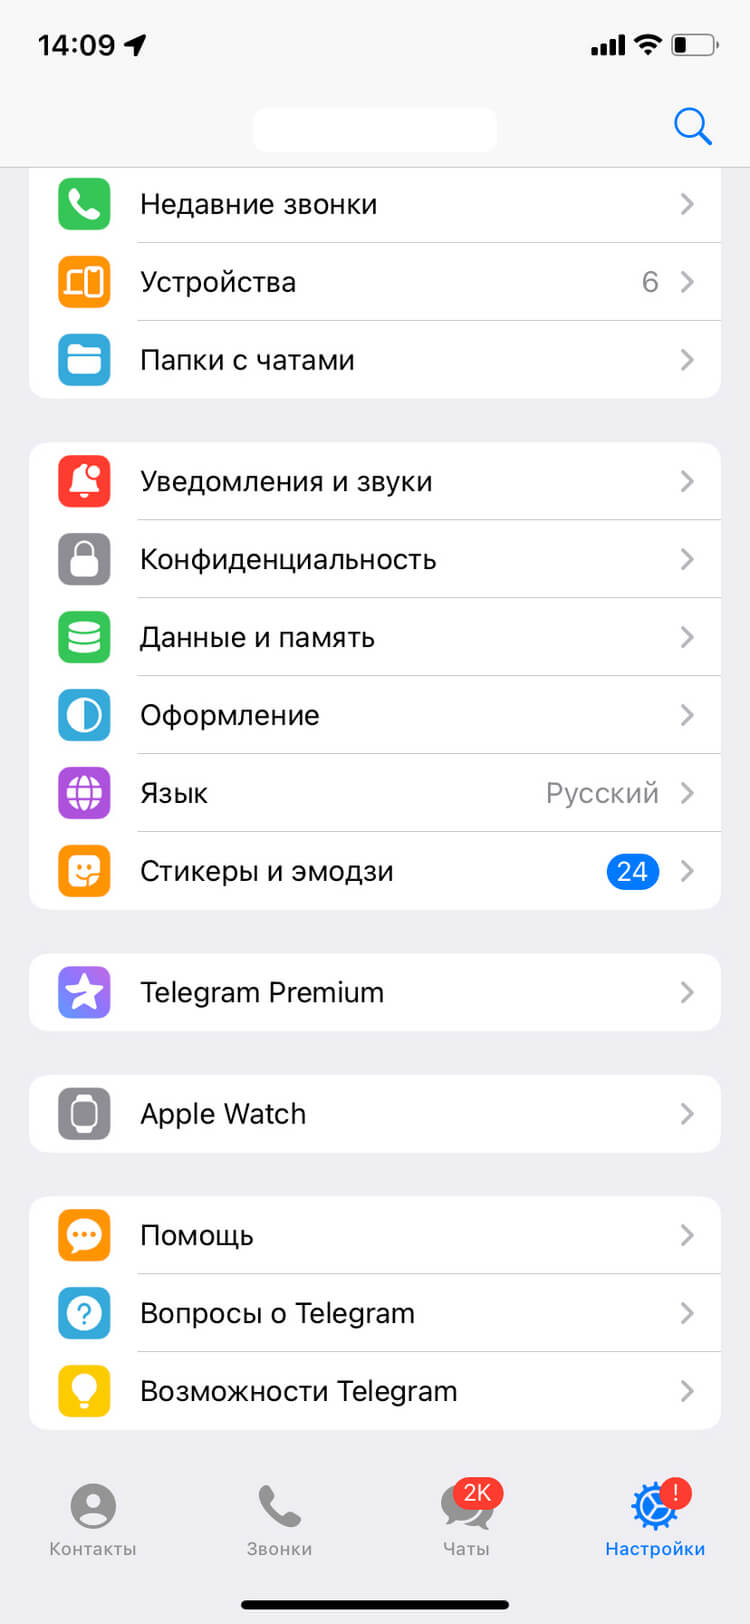 Как включить и оплатить Telegram Premium на iPhone и Android-смартфонах в России и можно ли это сделать